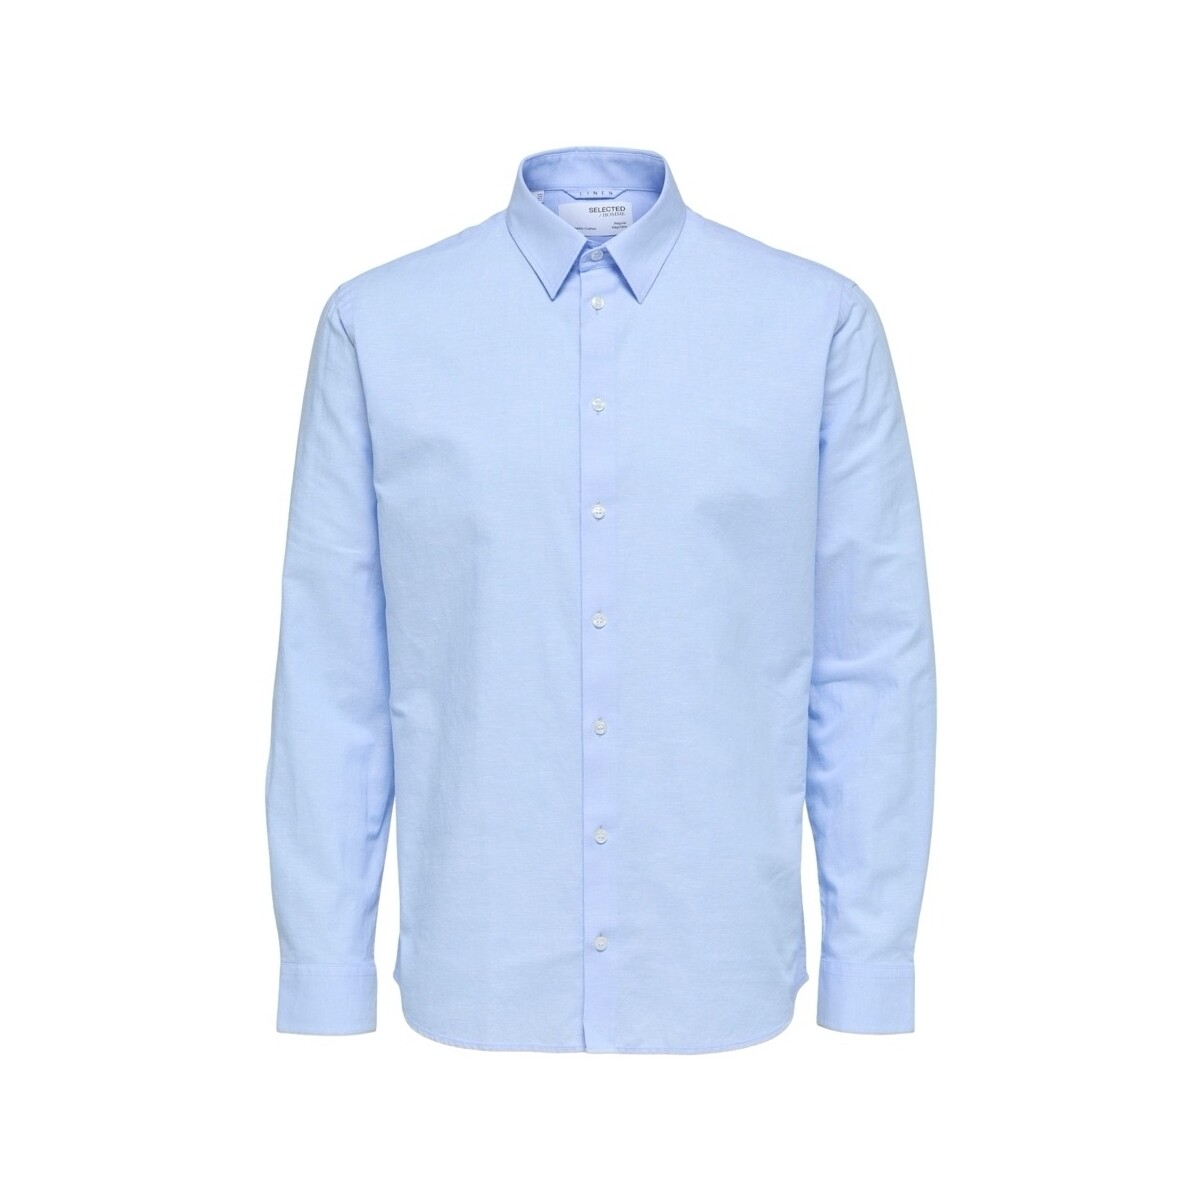 Textiel Heren Overhemden lange mouwen Selected Regnew-Linen - Cashmere Blue Blauw